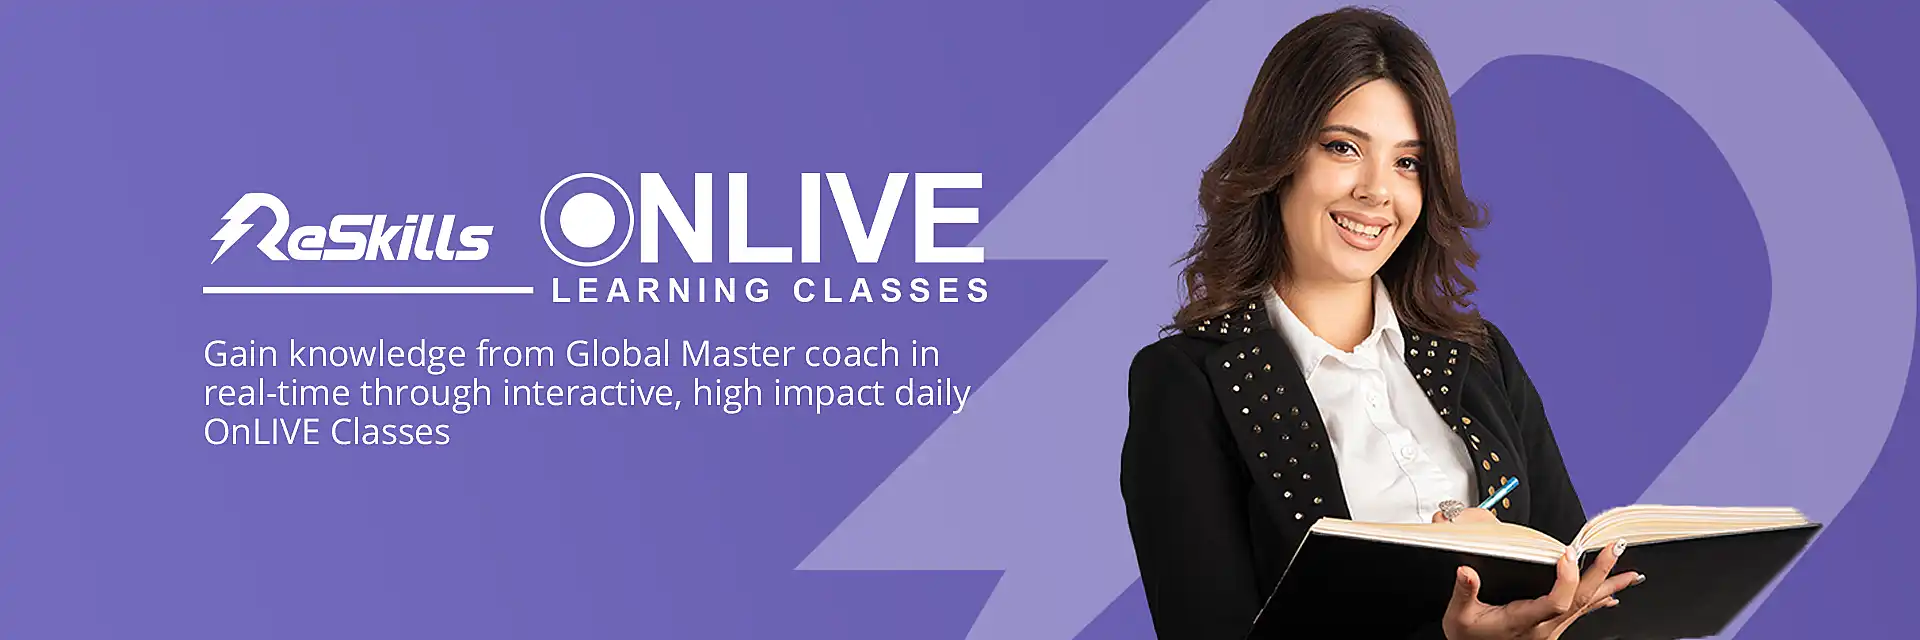 Banner OnLIVE Classes | ReSkills